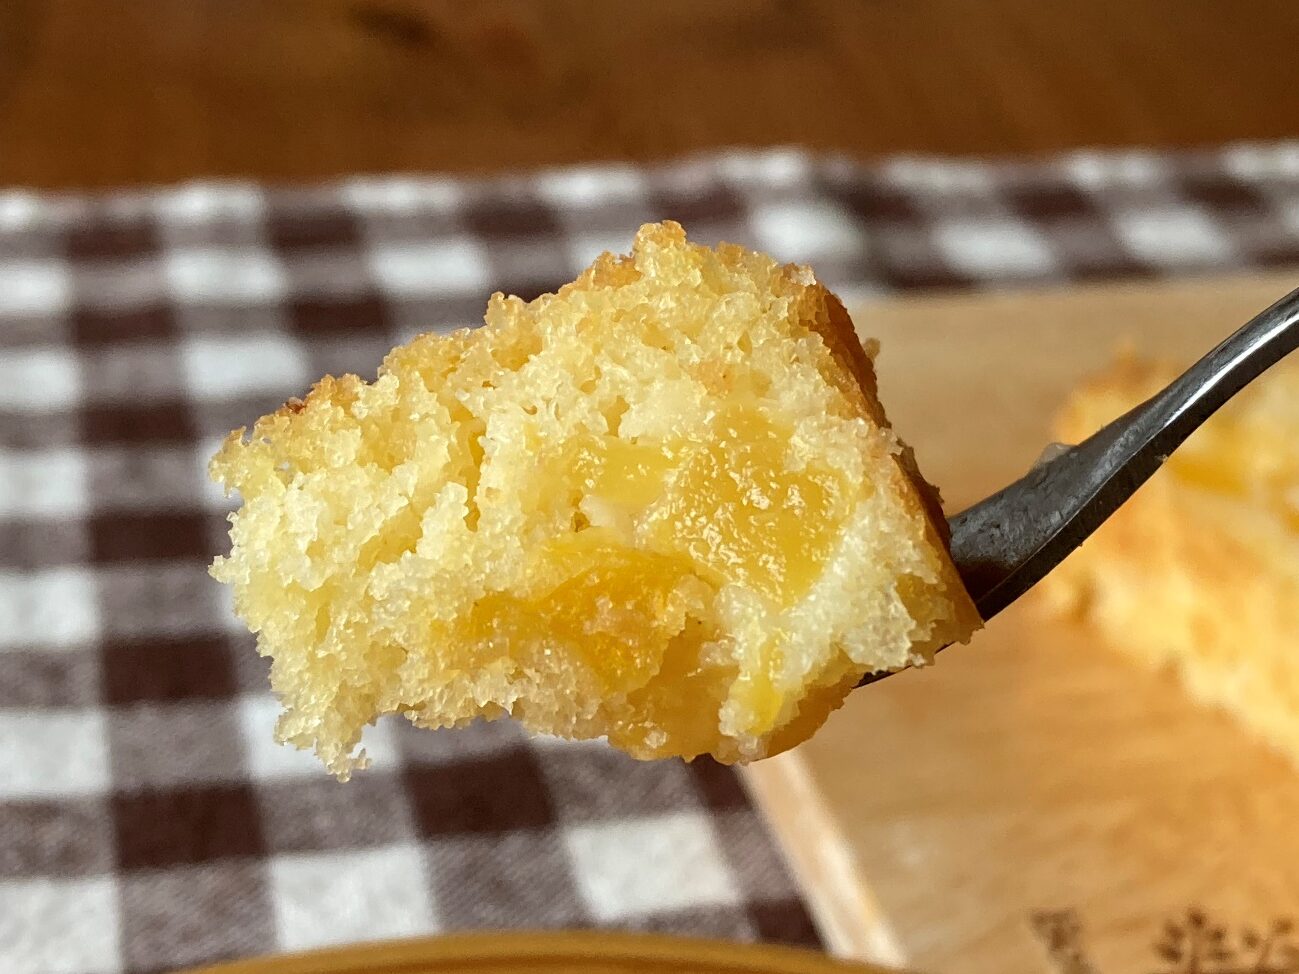 フォークにのせた業務スーパーの黄桃ダイスカットで作った黄桃のパウンドケーキ